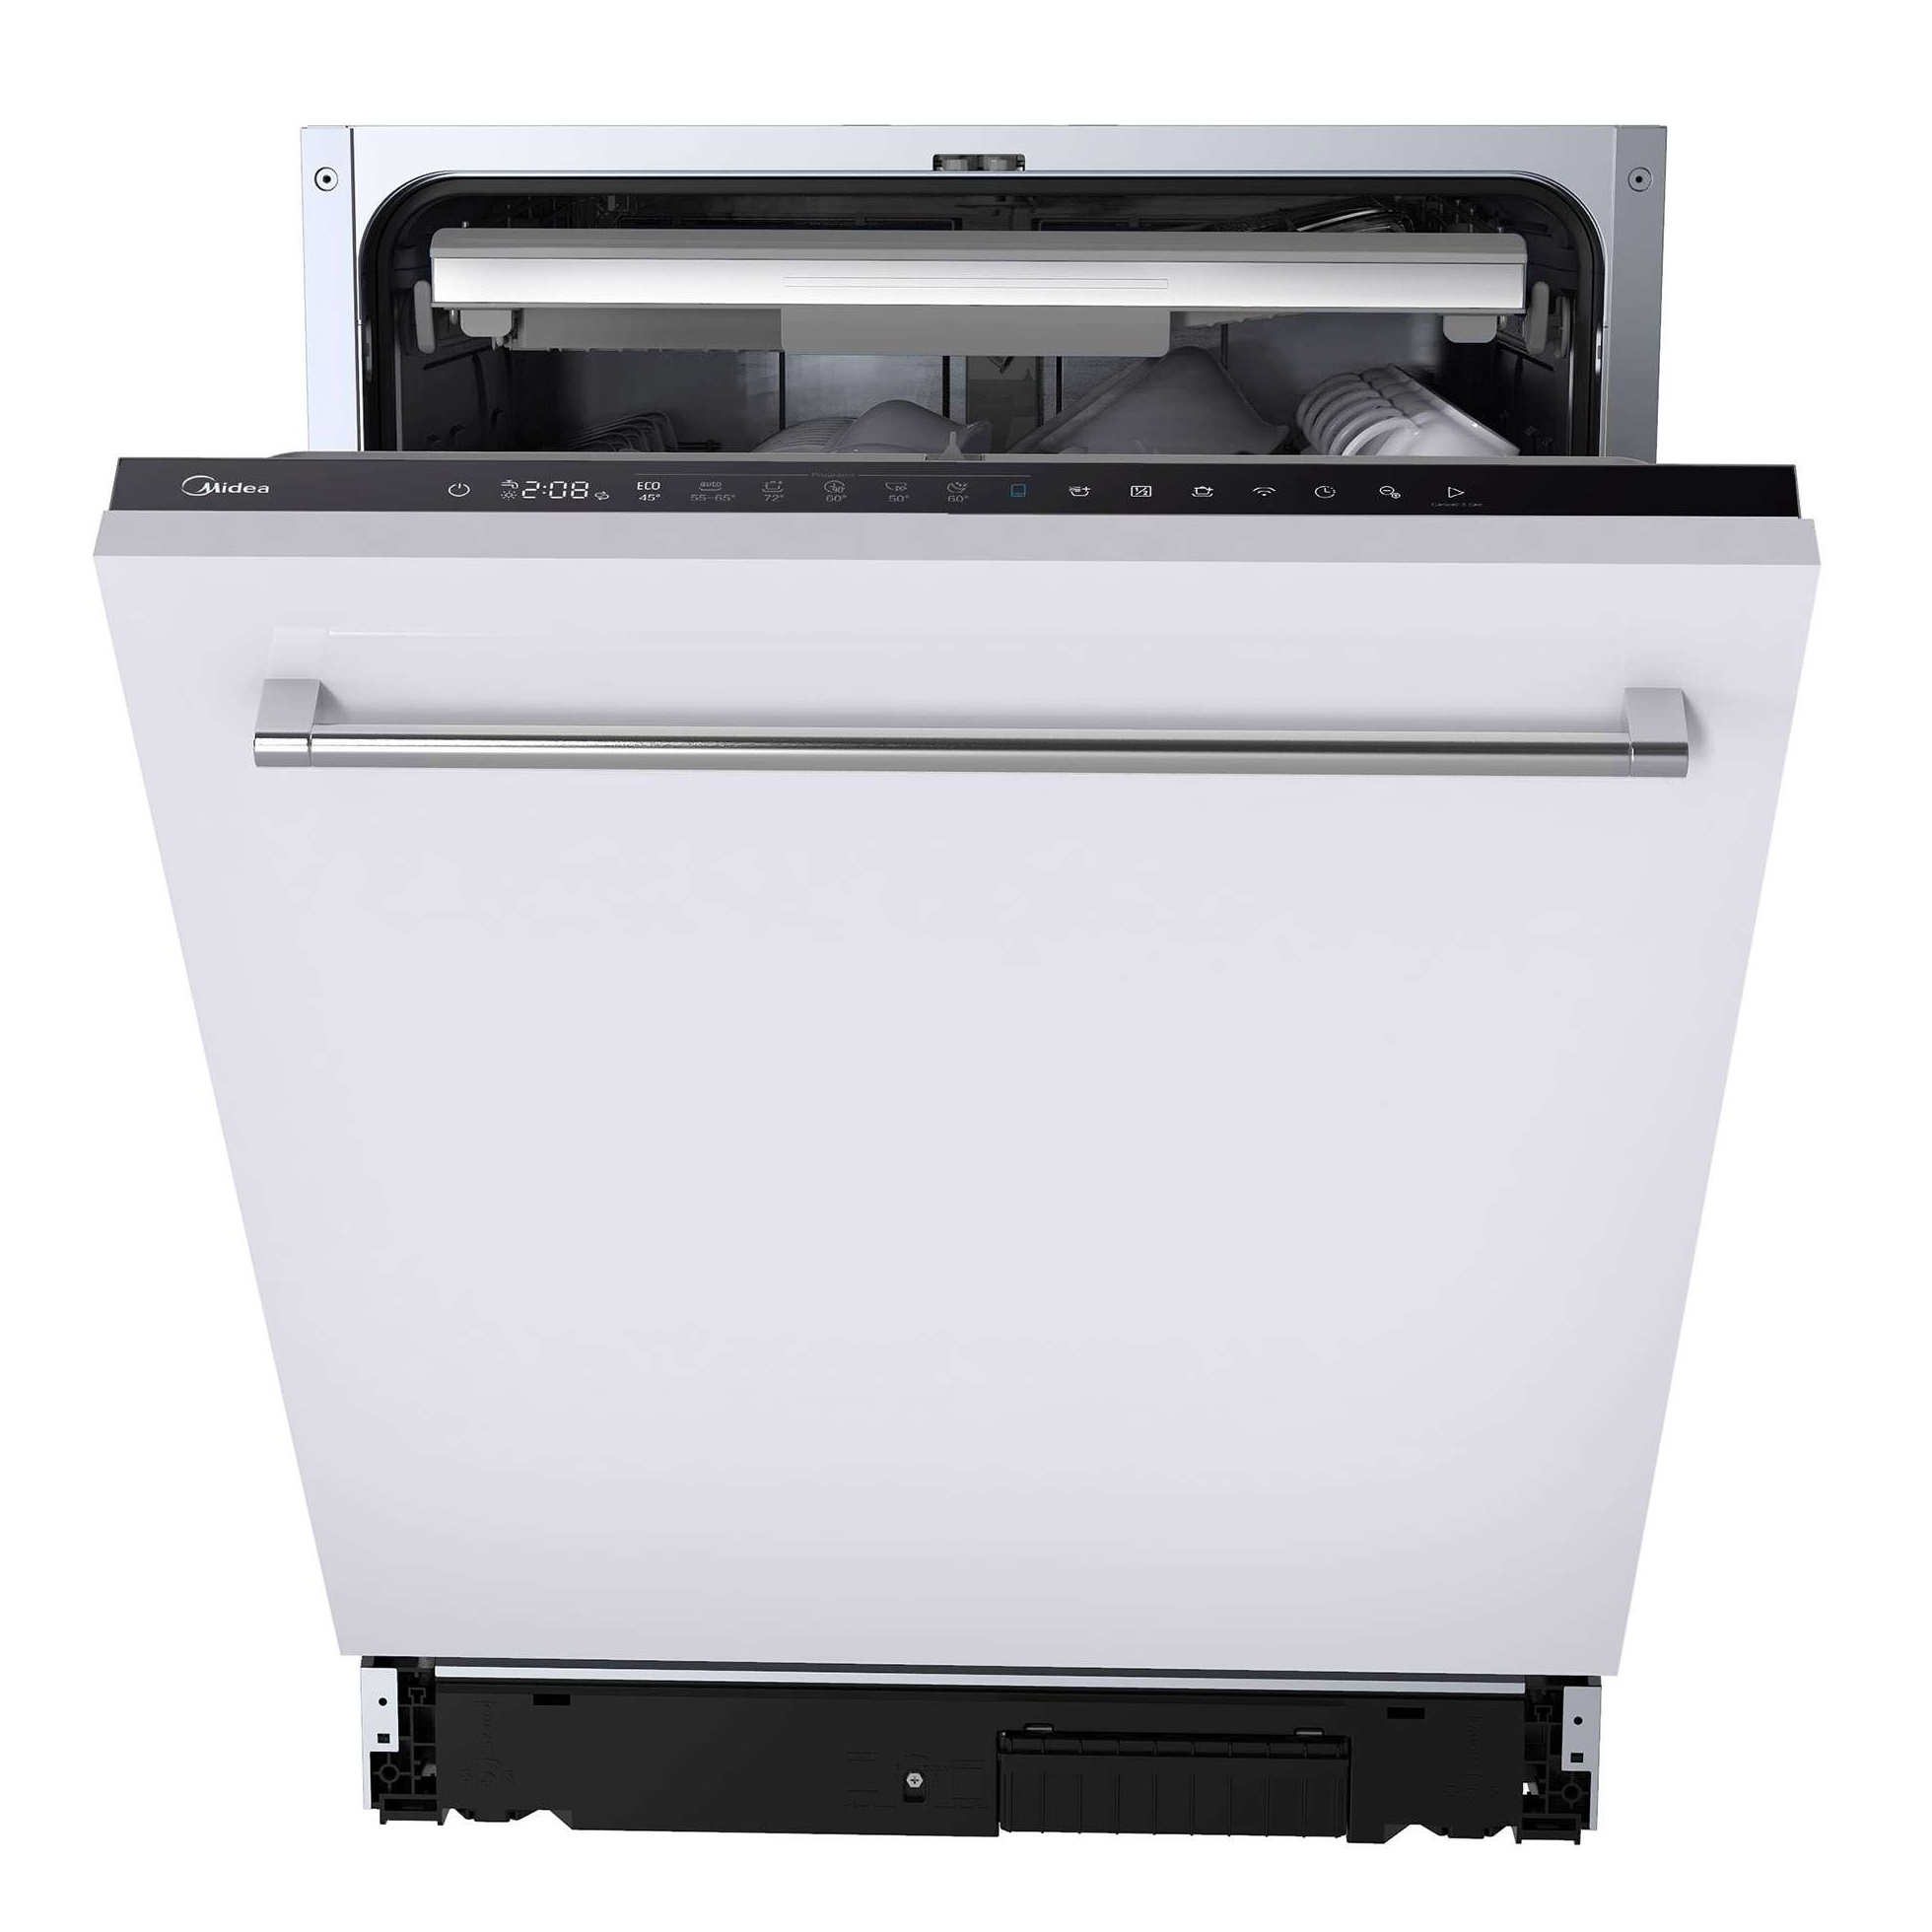 Встраиваемая посудомоечная машина Midea MID60S360i встраиваемая посудомоечная машина midea mfd60s150wi